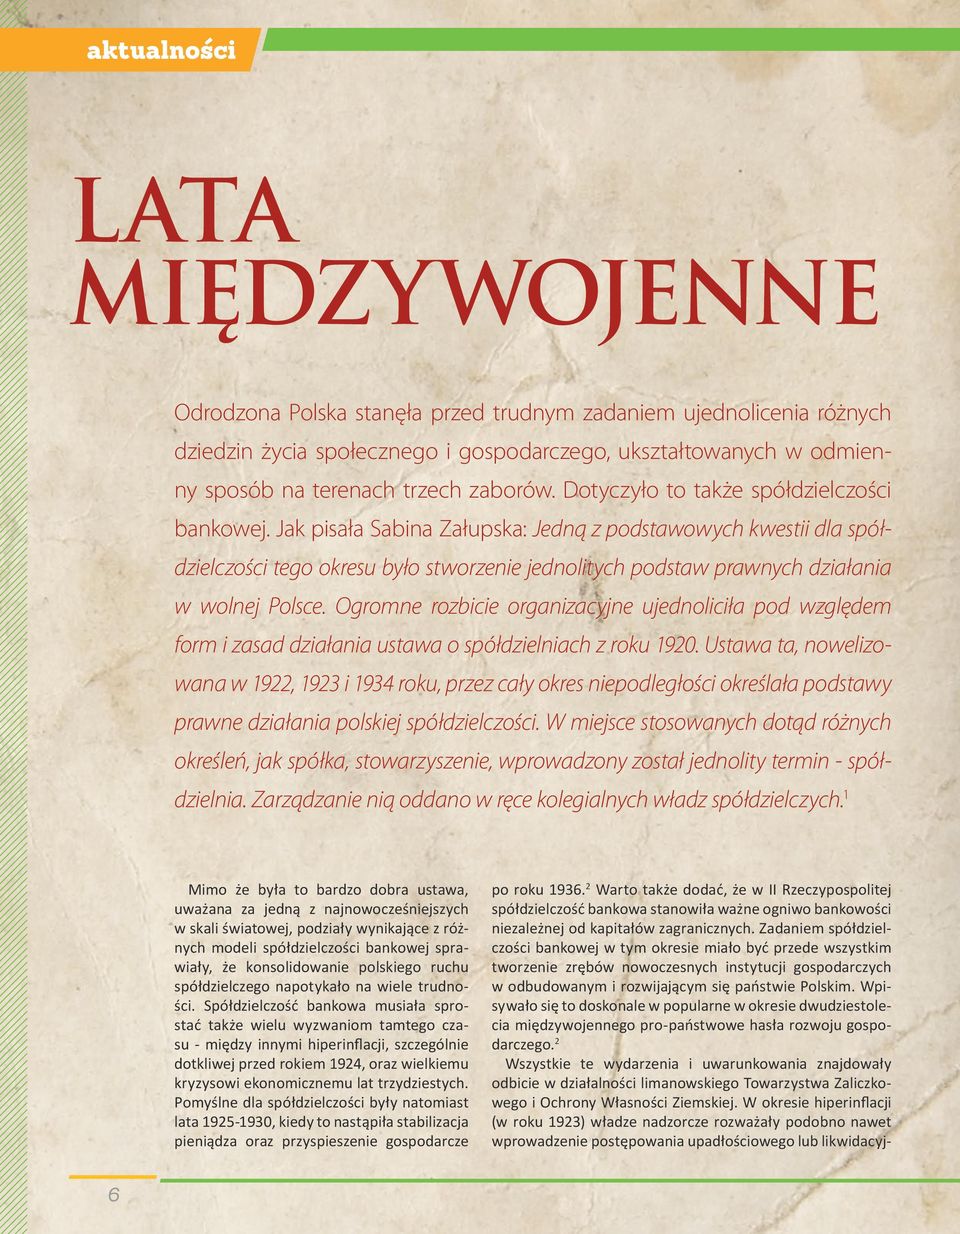 Jak pisała Sabina Załupska: Jedną z podstawowych kwestii dla spółdzielczości tego okresu było stworzenie jednolitych podstaw prawnych działania w wolnej Polsce.